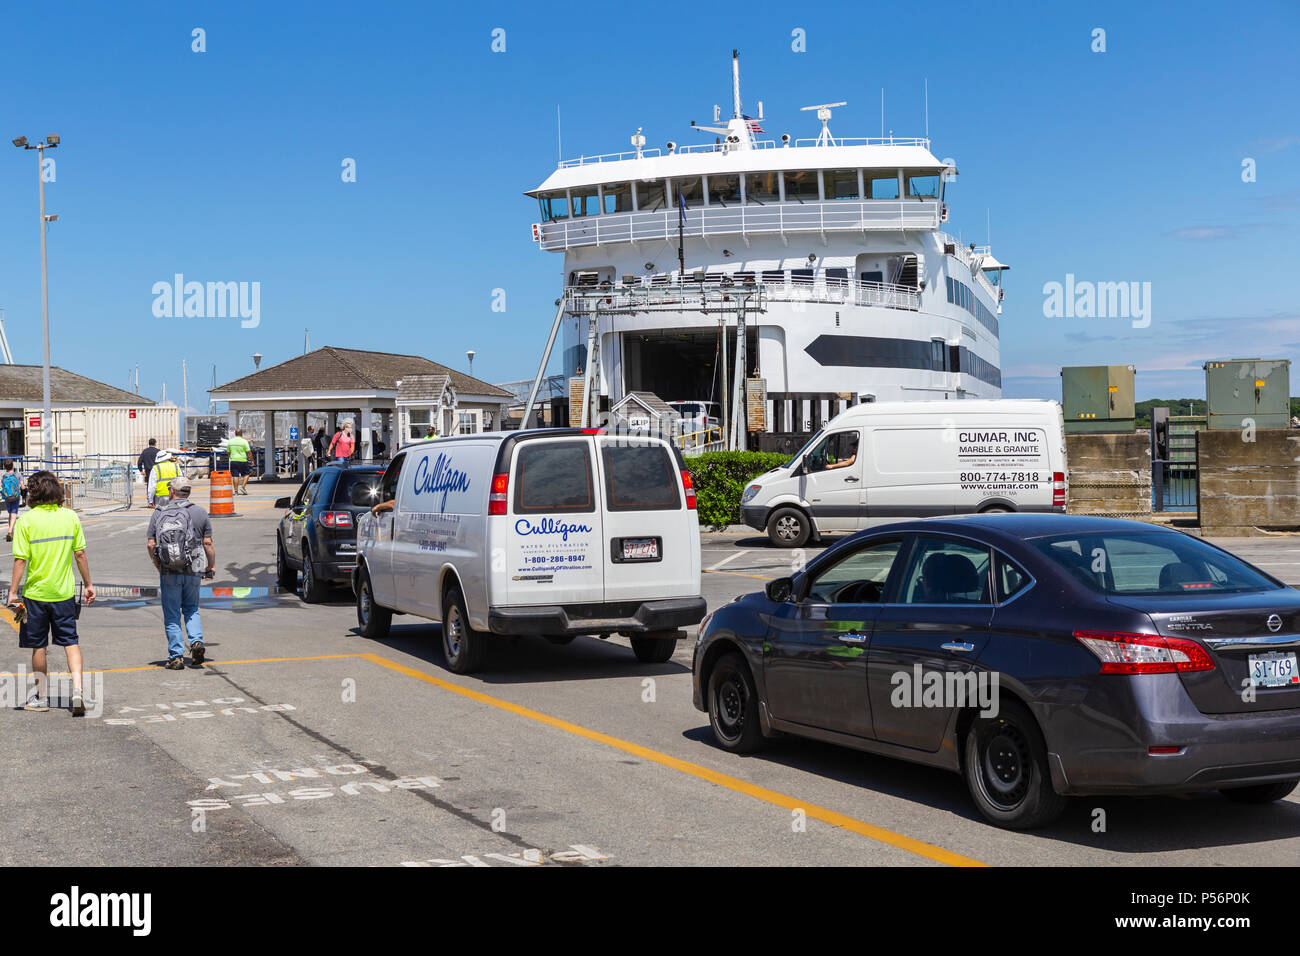 Fahrzeuge und Passagiere sind an Bord eines Dampfschiffes Behörde Fähre 'MV Insel Startseite ' in Vineyard Haven auf Martha's Vineyard geladen. Stockfoto